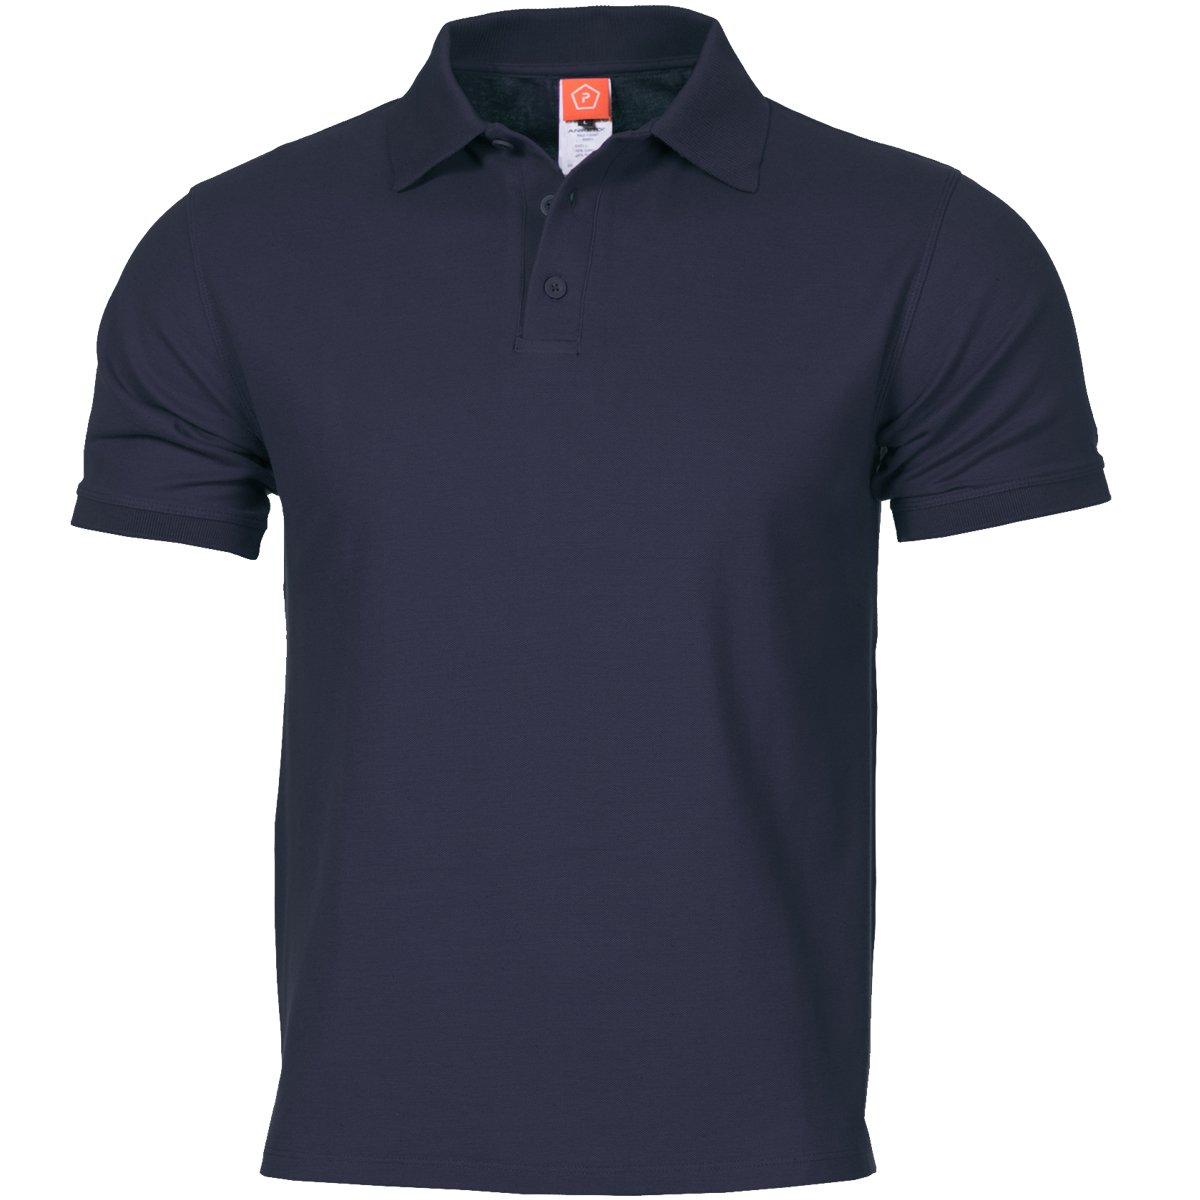 Pentagon Polo Shirt Aniketos Navy Blue, S, Navy Blue